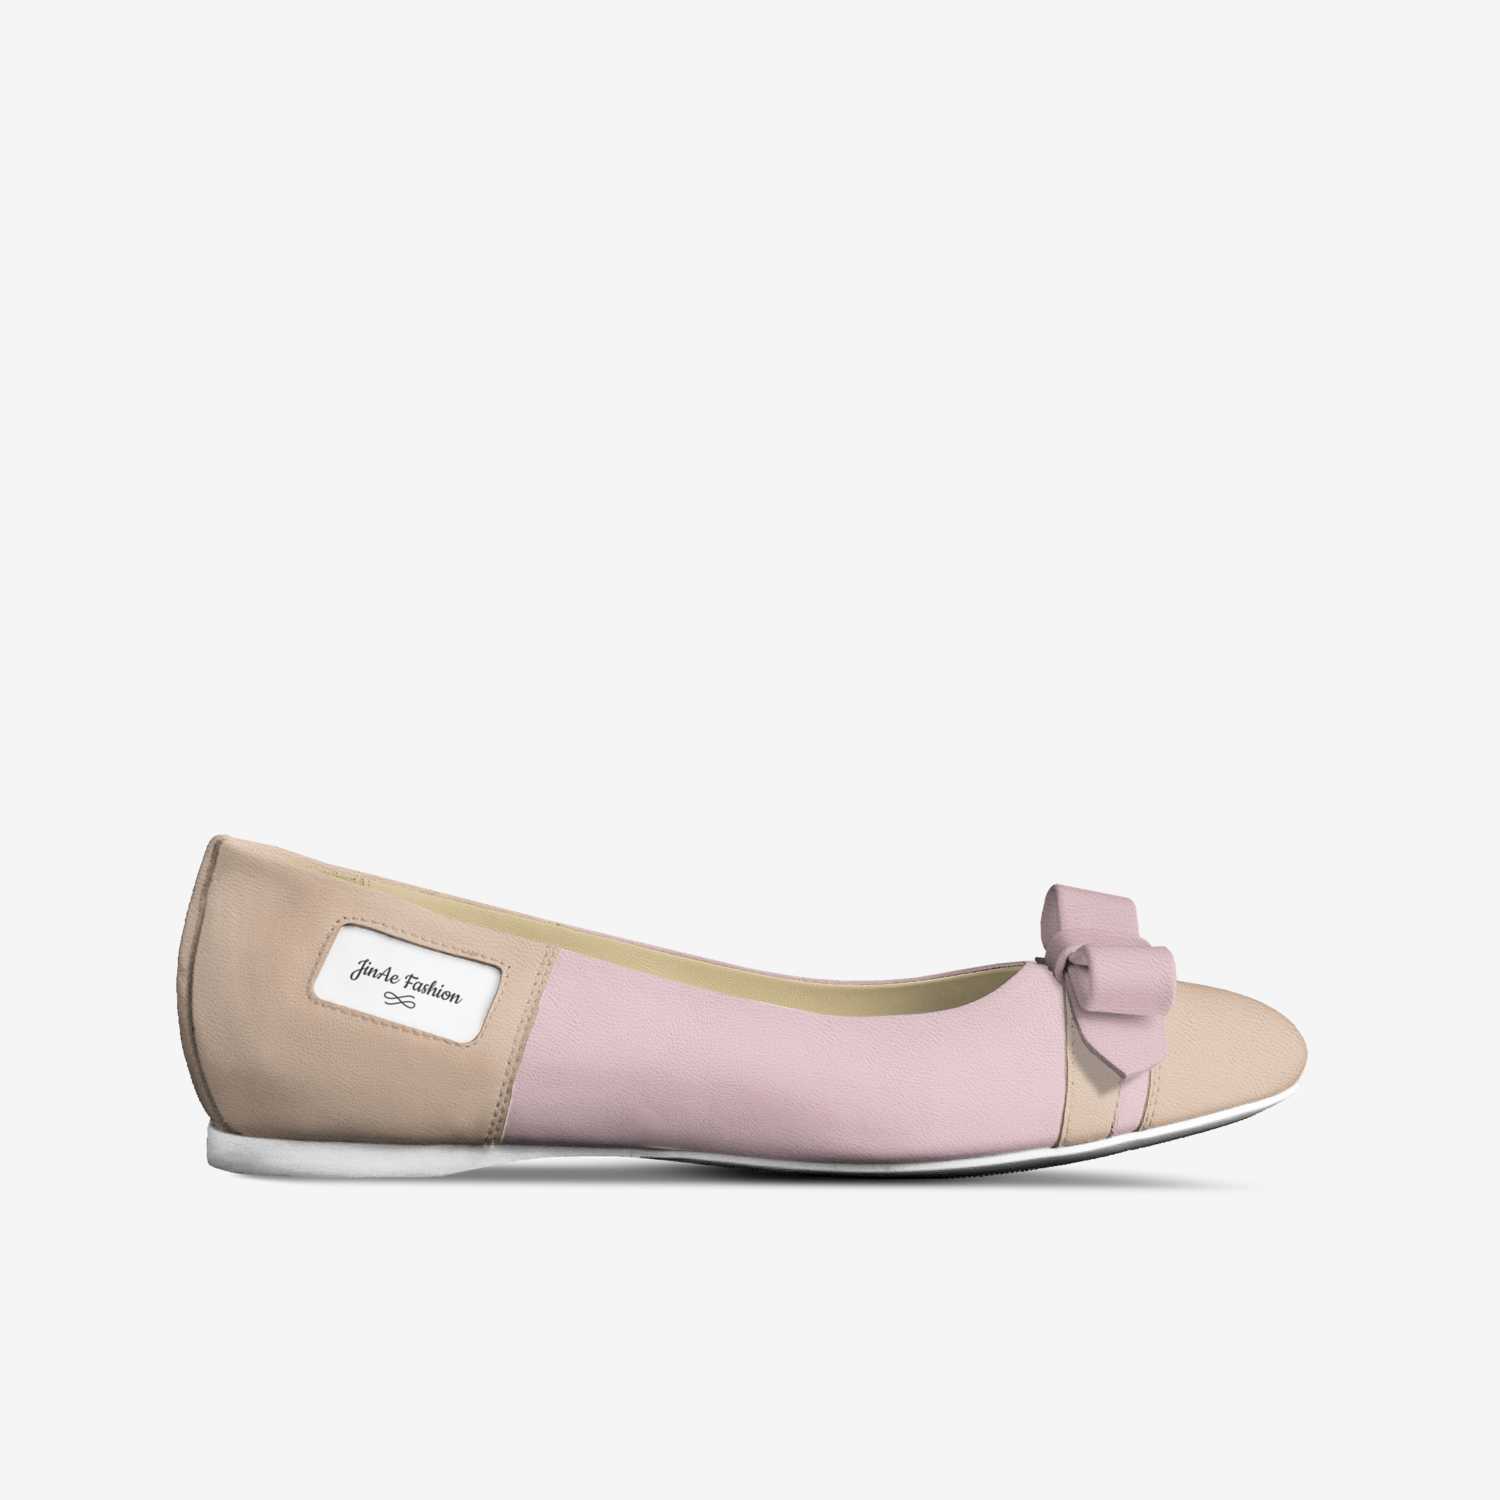 JinAe Fashion | A Custom Shoe concept by Jenae